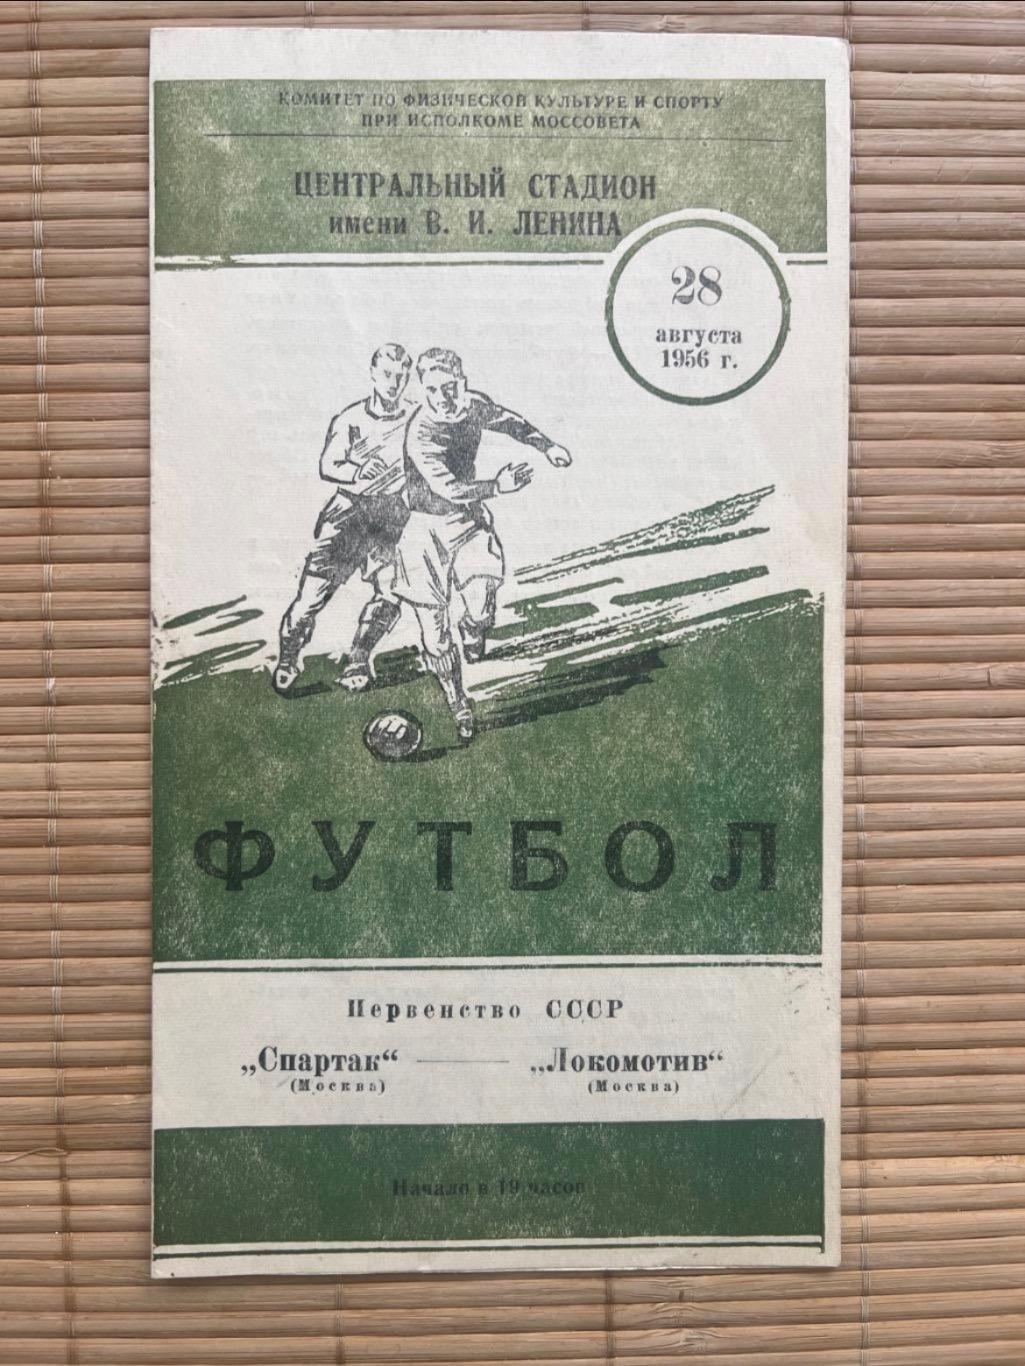 Спартак Москва - Локомотив Москва 28.08.1956